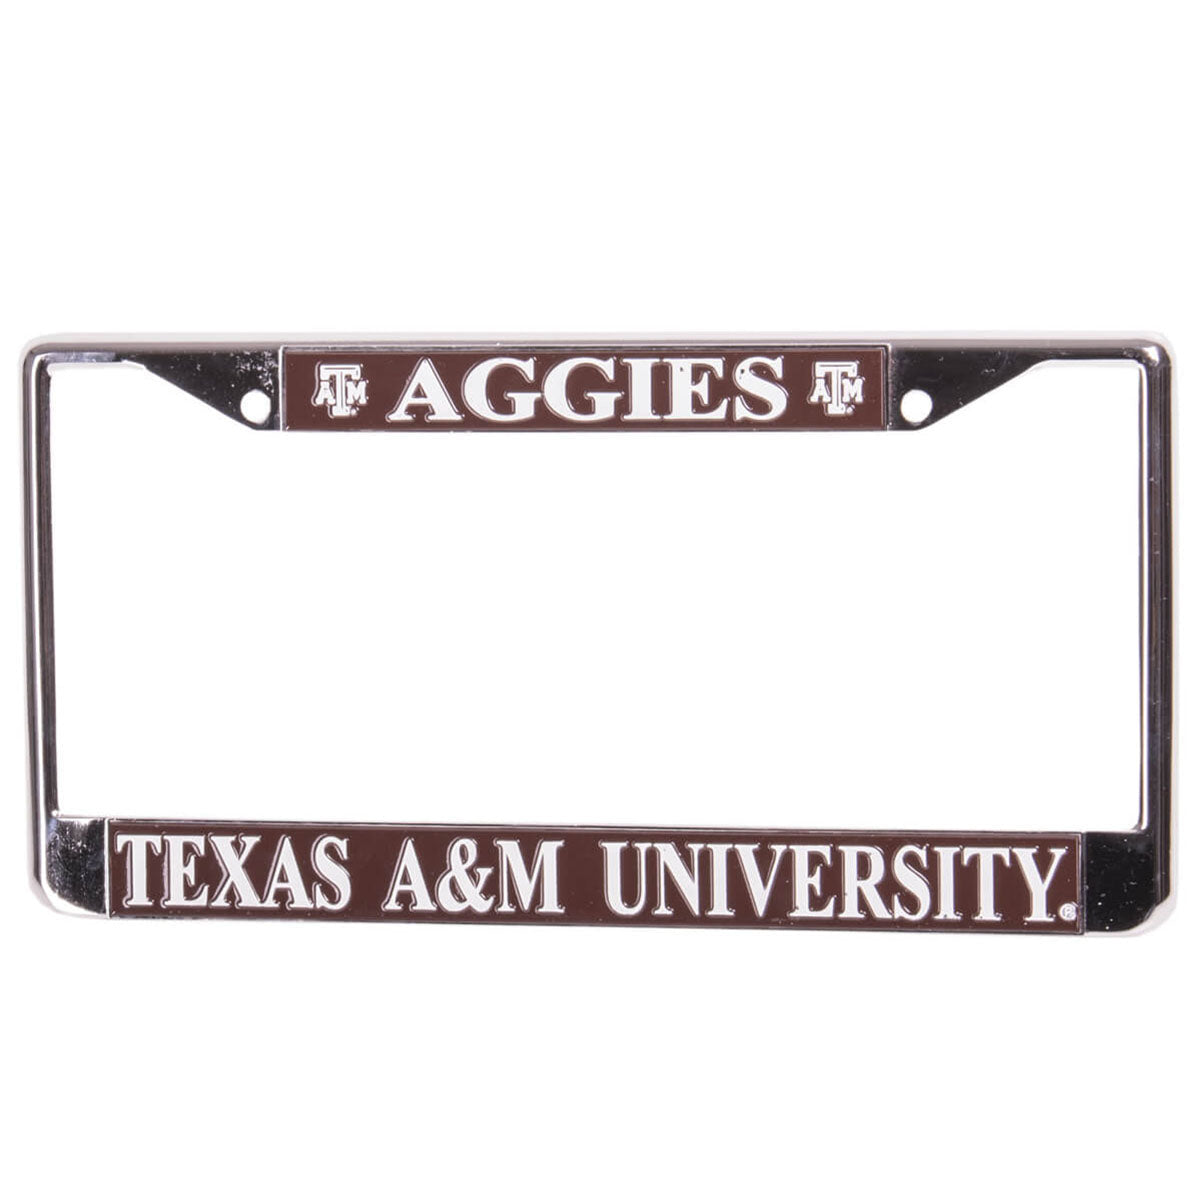 Texas A&M Aggies License Plate Frame